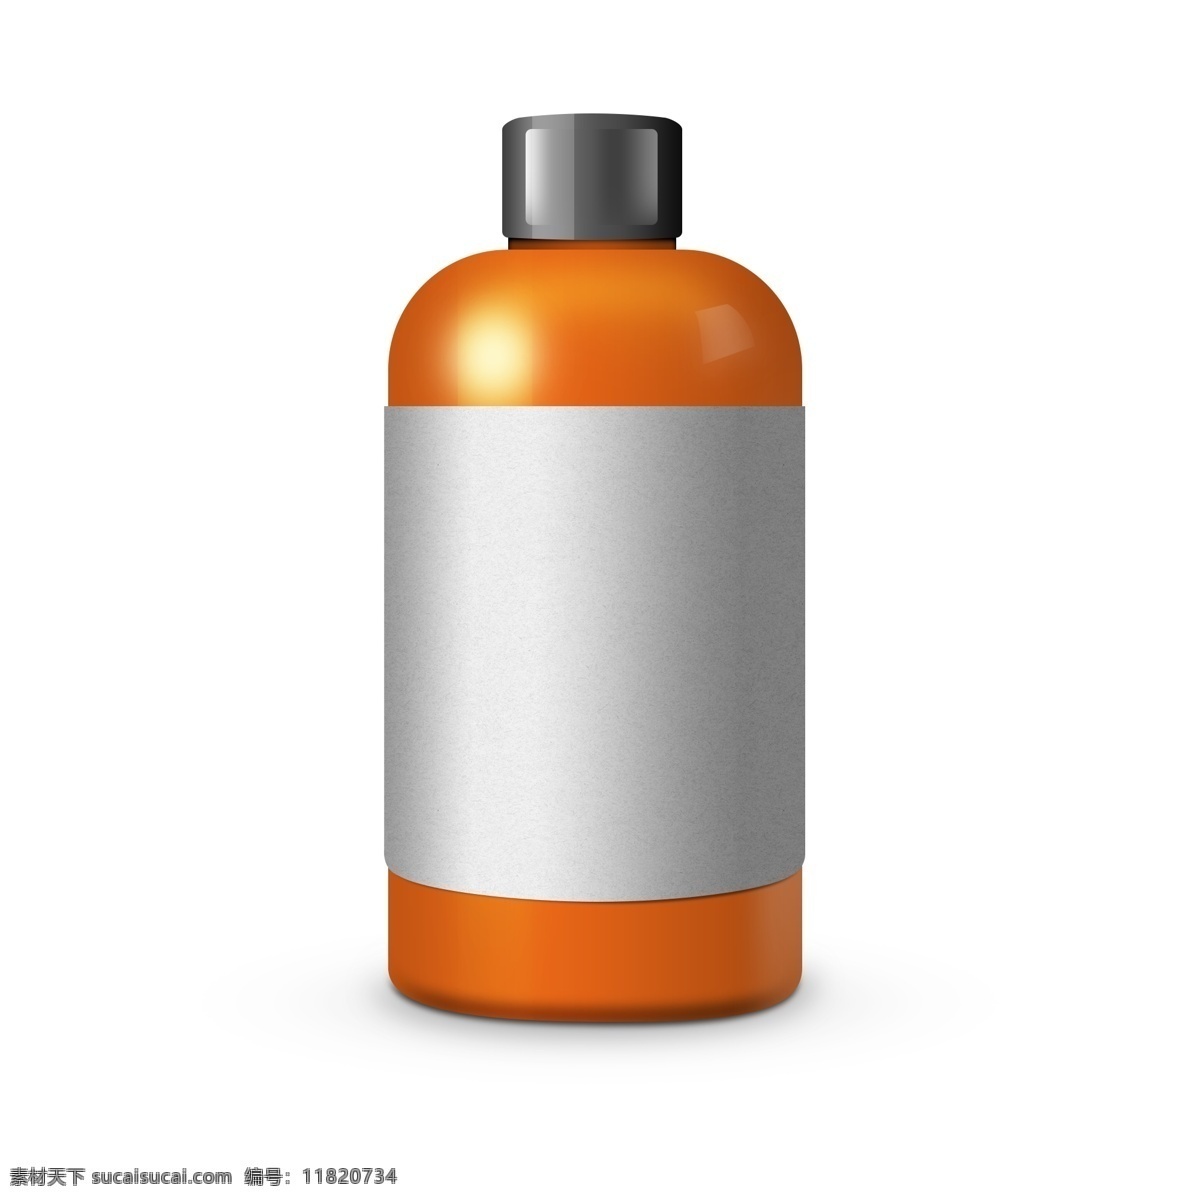 手绘 橘 色 塑料 瓶子 手绘瓶子 手绘塑料瓶子 塑料瓶 橘色塑料瓶